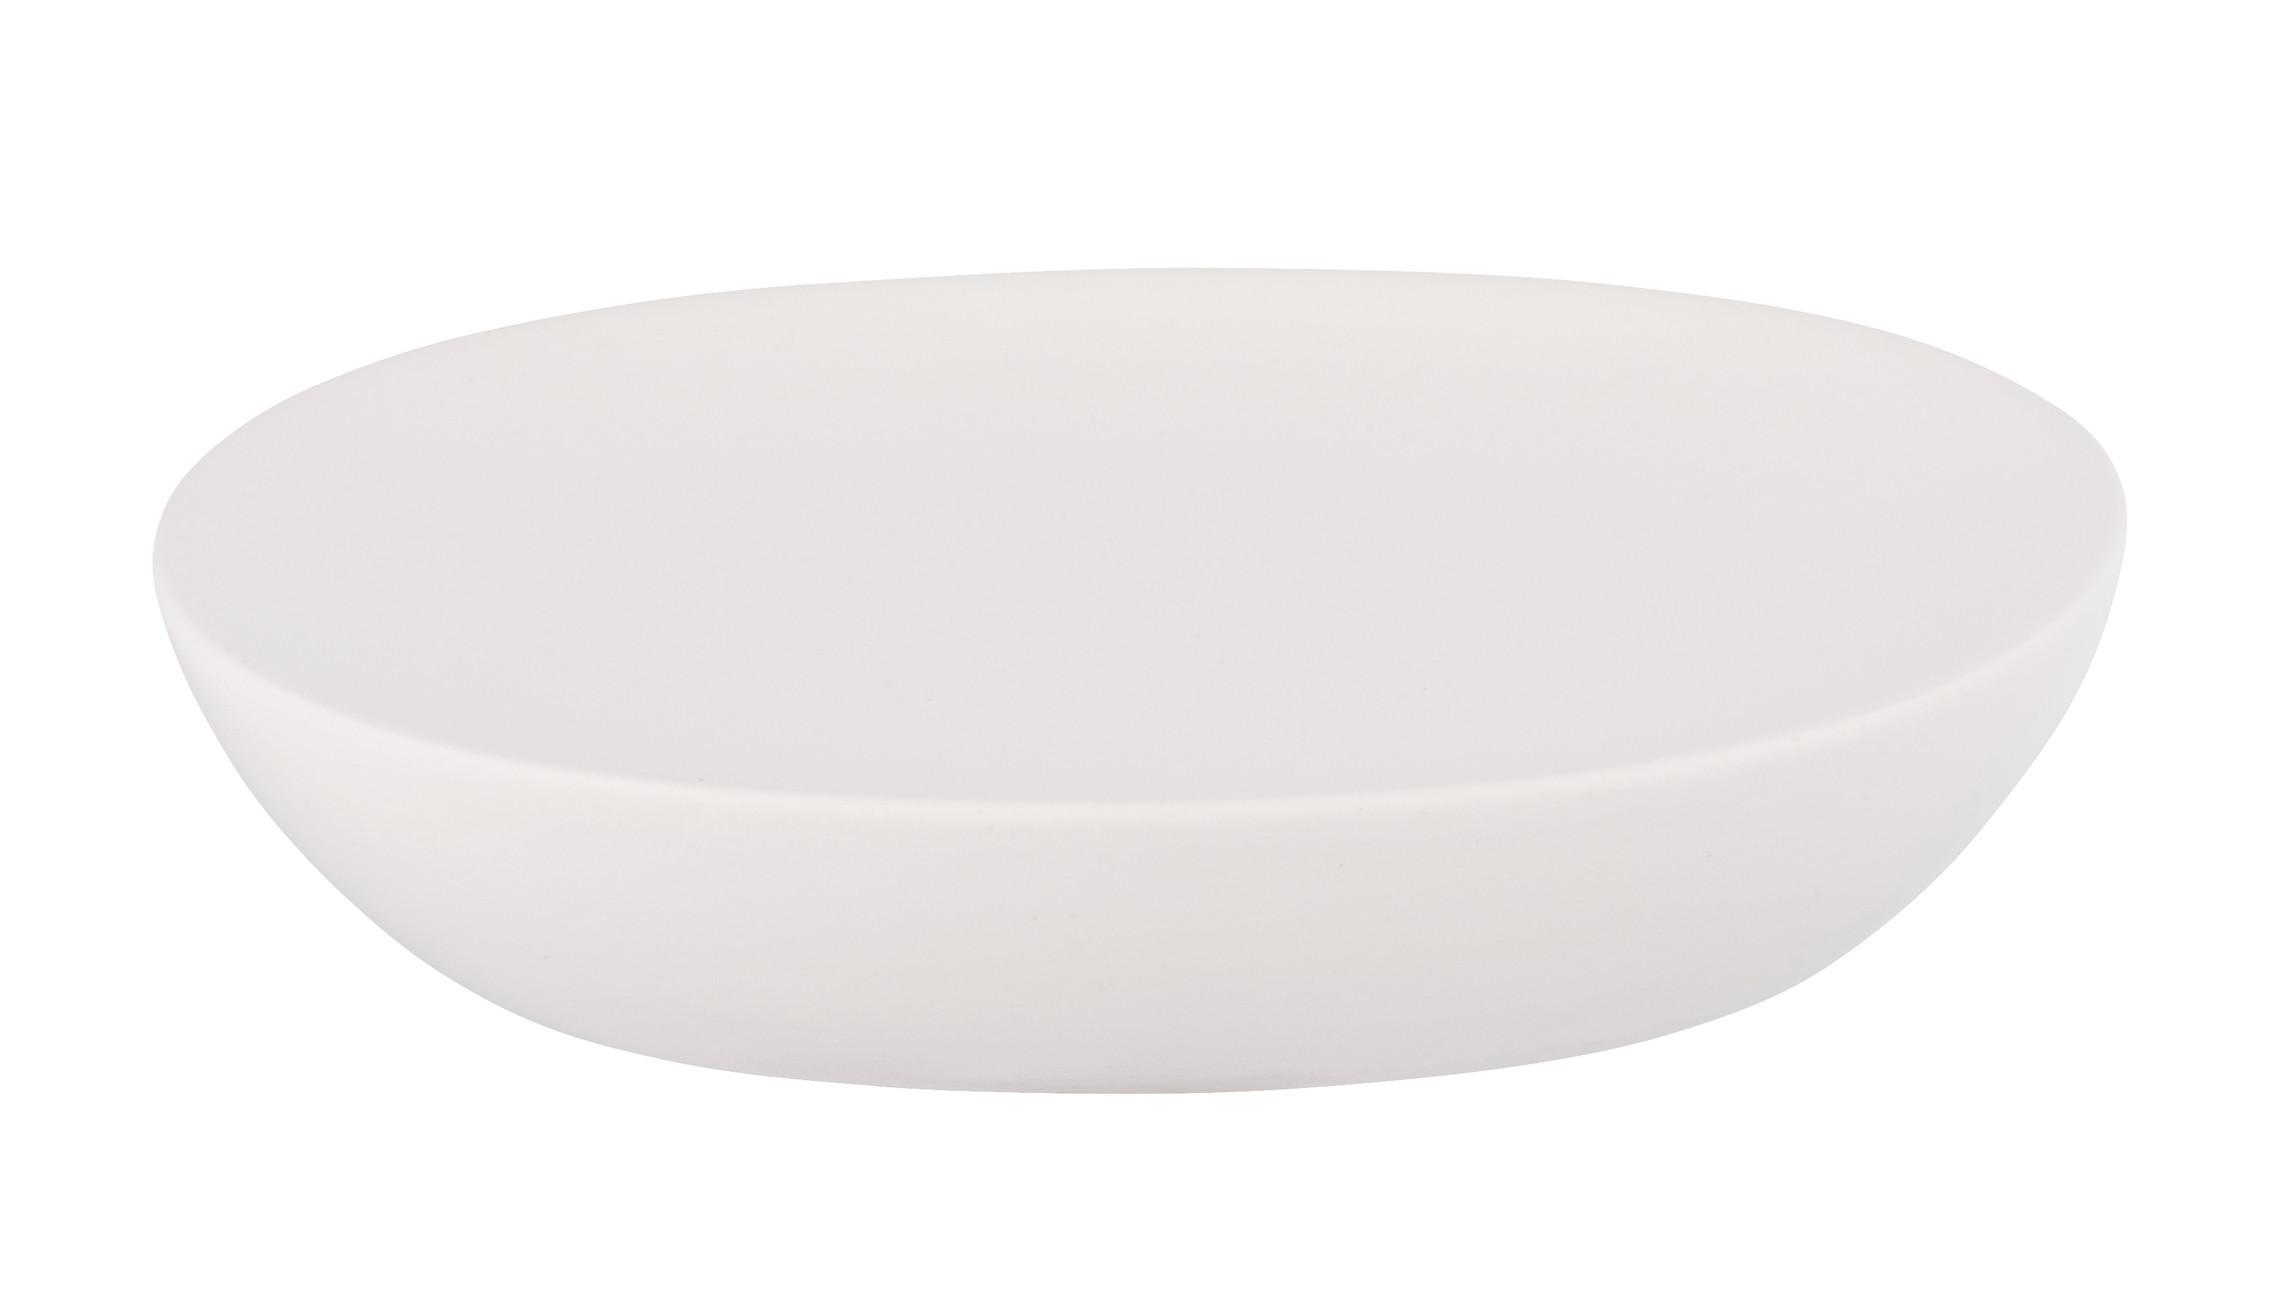 Seifenschale Allstar Olinda 70189400 - Weiß, MODERN, Keramik (12/3/8,5cm) - Wenko